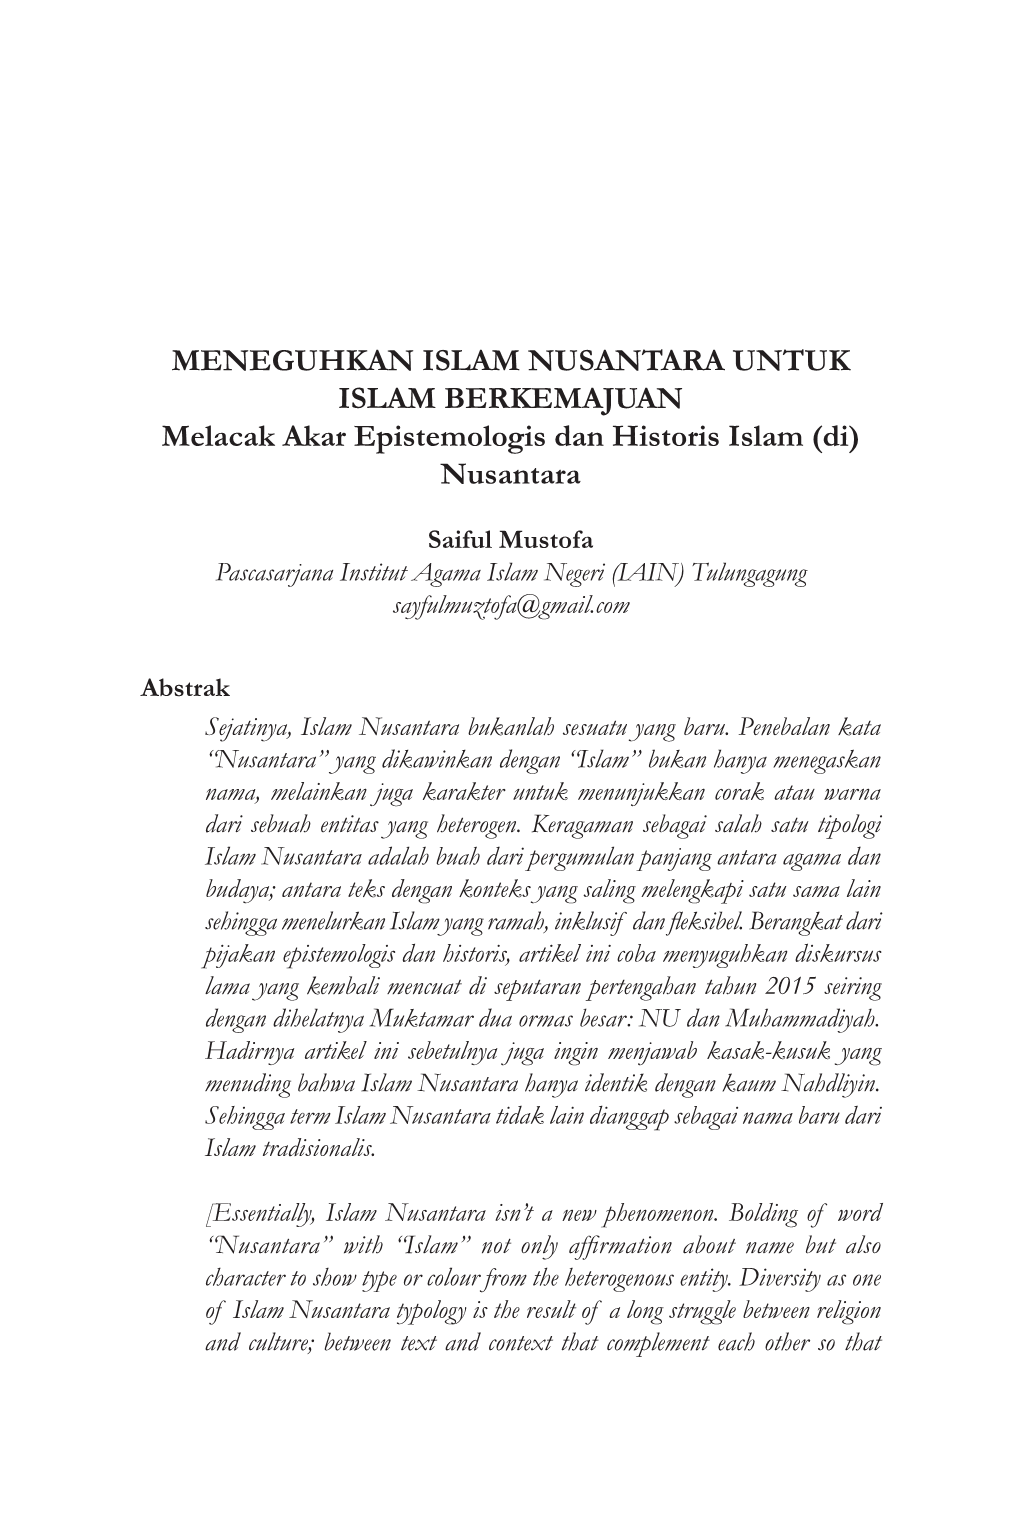 MENEGUHKAN ISLAM NUSANTARA UNTUK ISLAM BERKEMAJUAN Melacak Akar Epistemologis Dan Historis Islam (Di) Nusantara